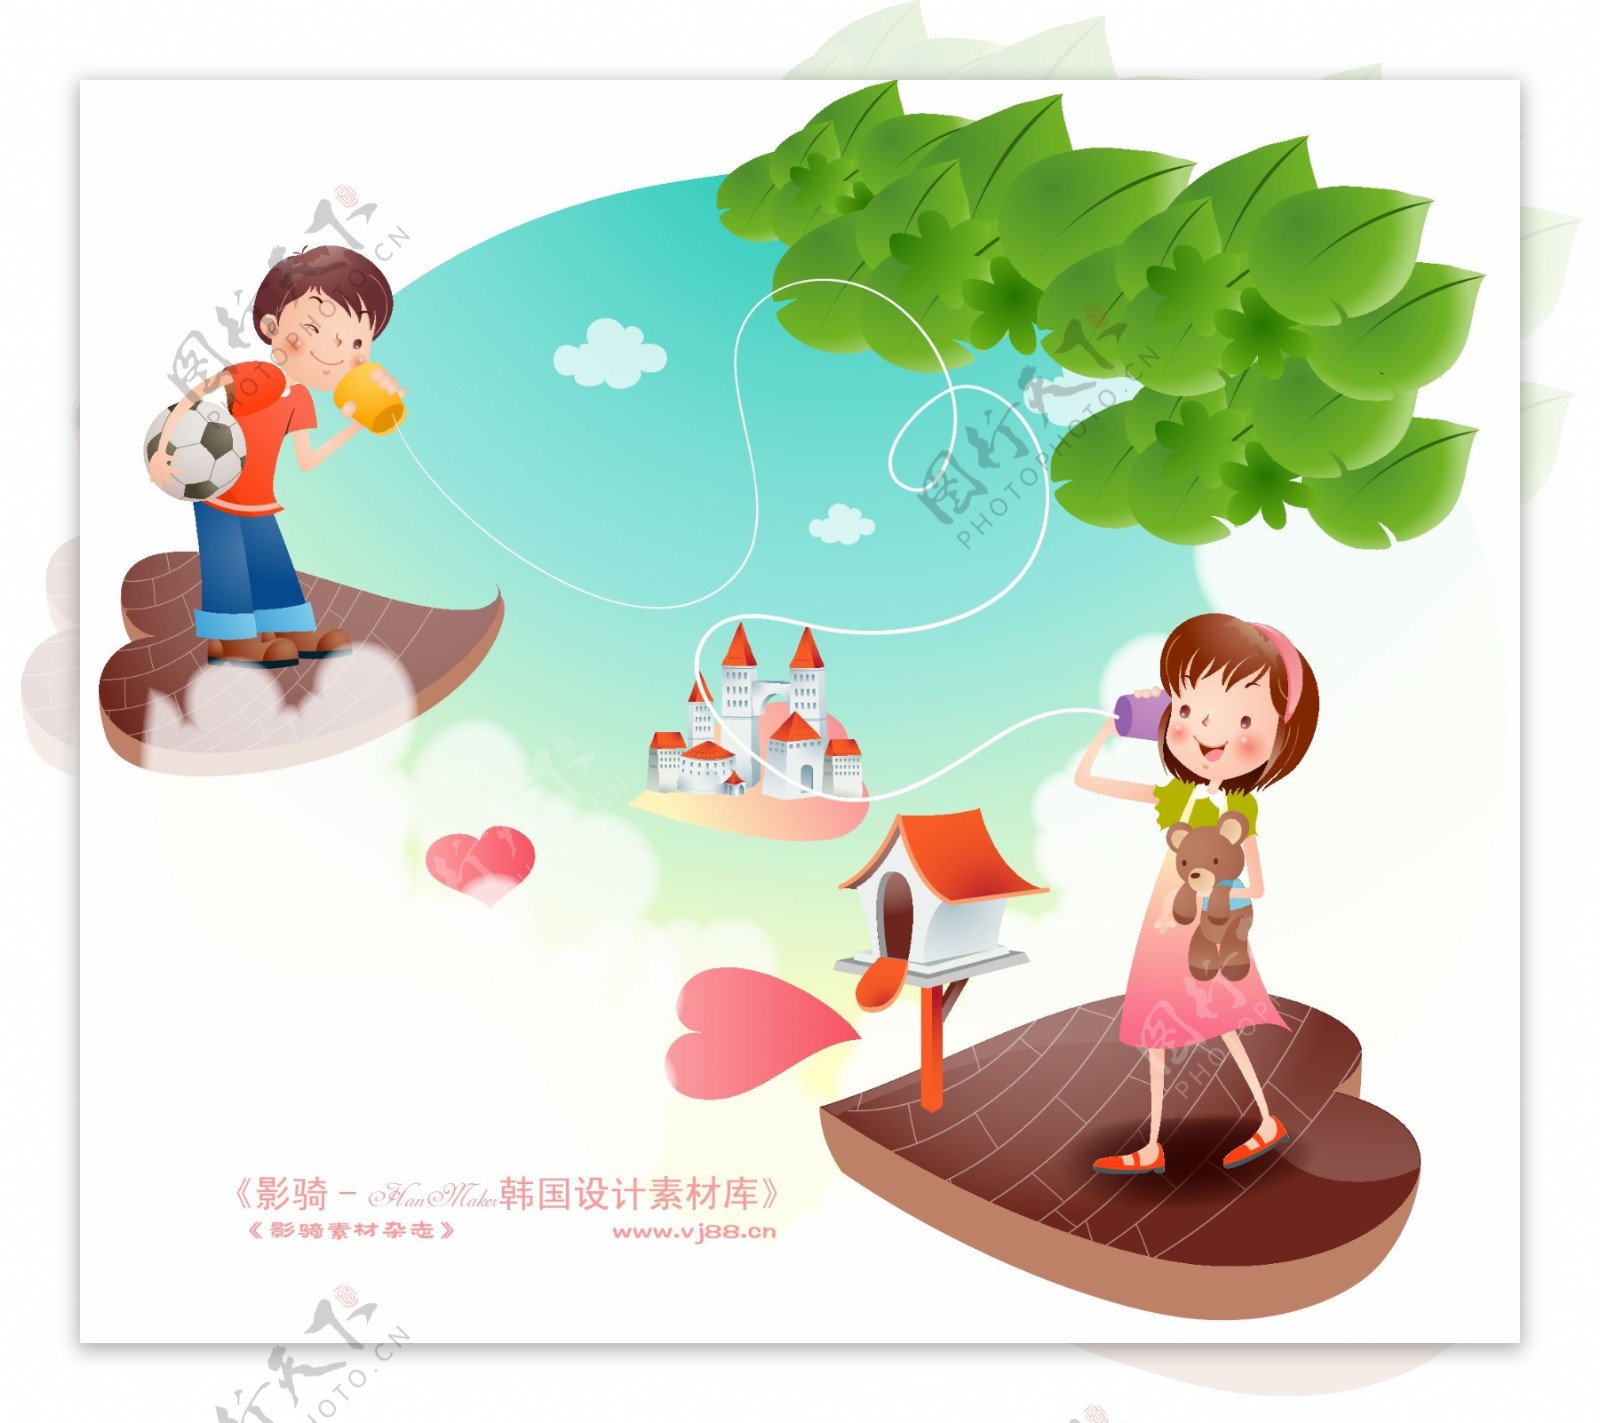 快乐署假生活假日生活卡通人物矢量素材矢量图片HanMaker韩国设计素材库